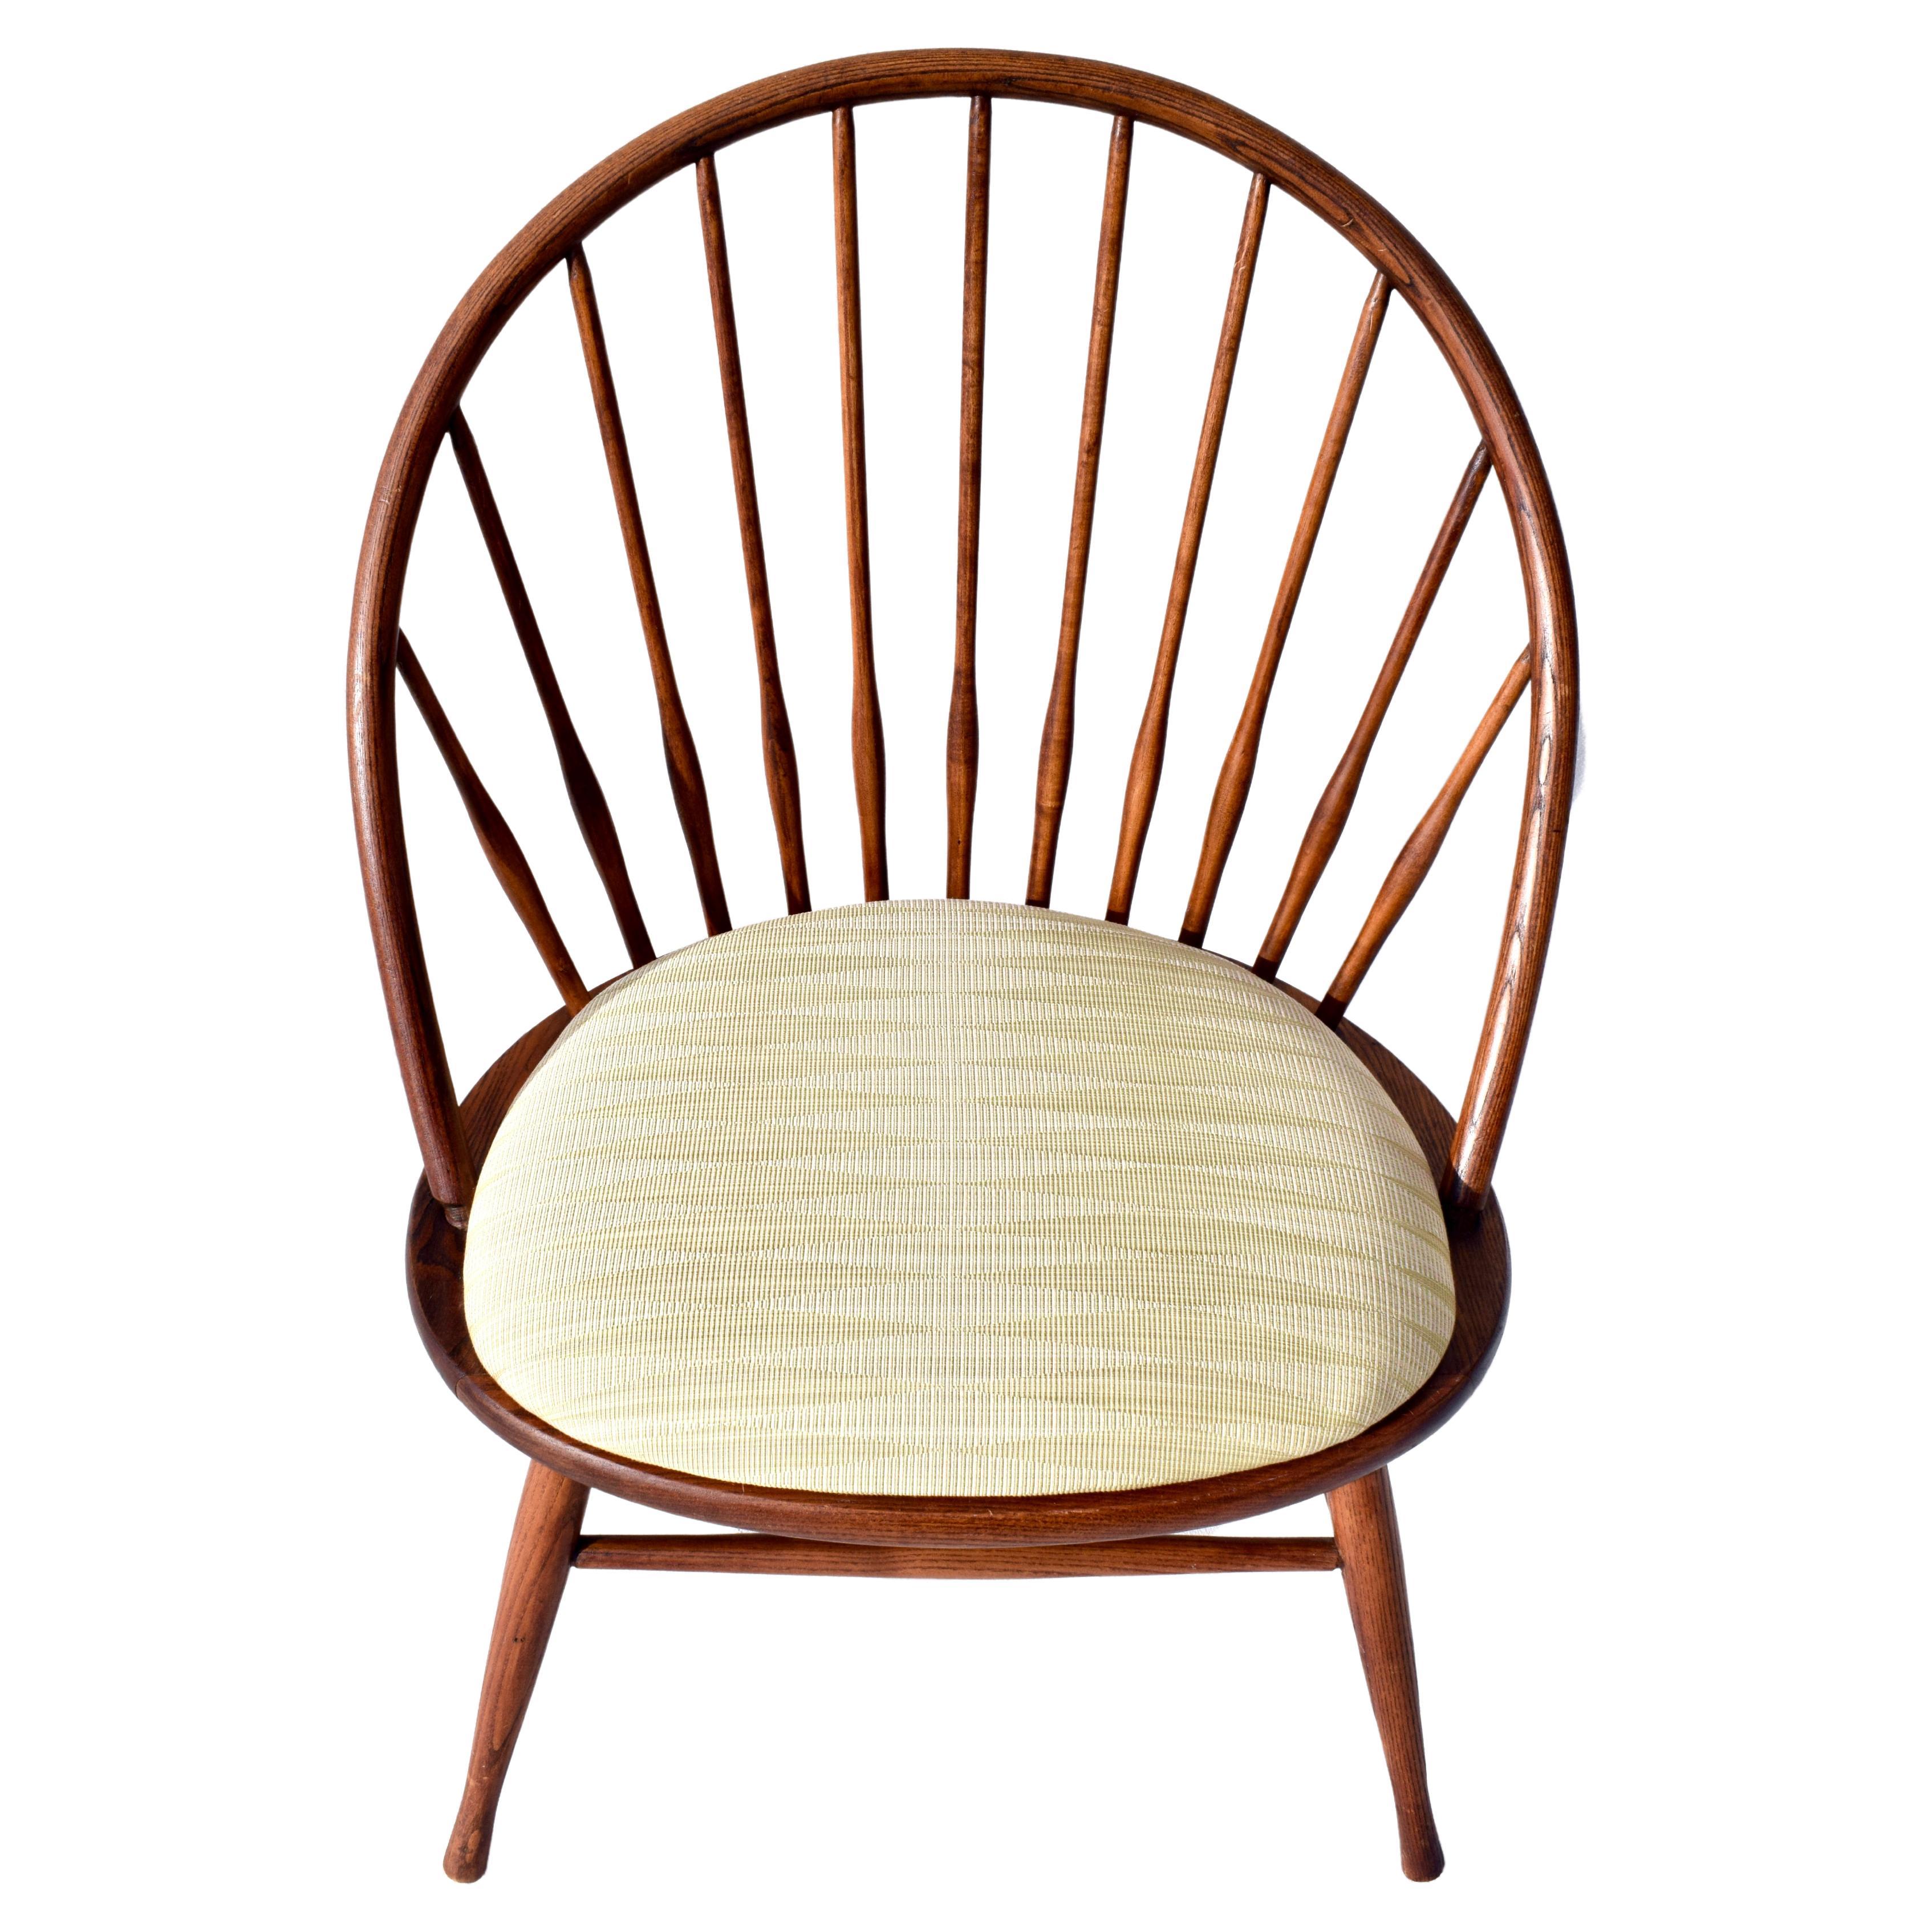 Modernistischer Stuhl im Windsor-Stil aus Eiche, hergestellt in Schweden